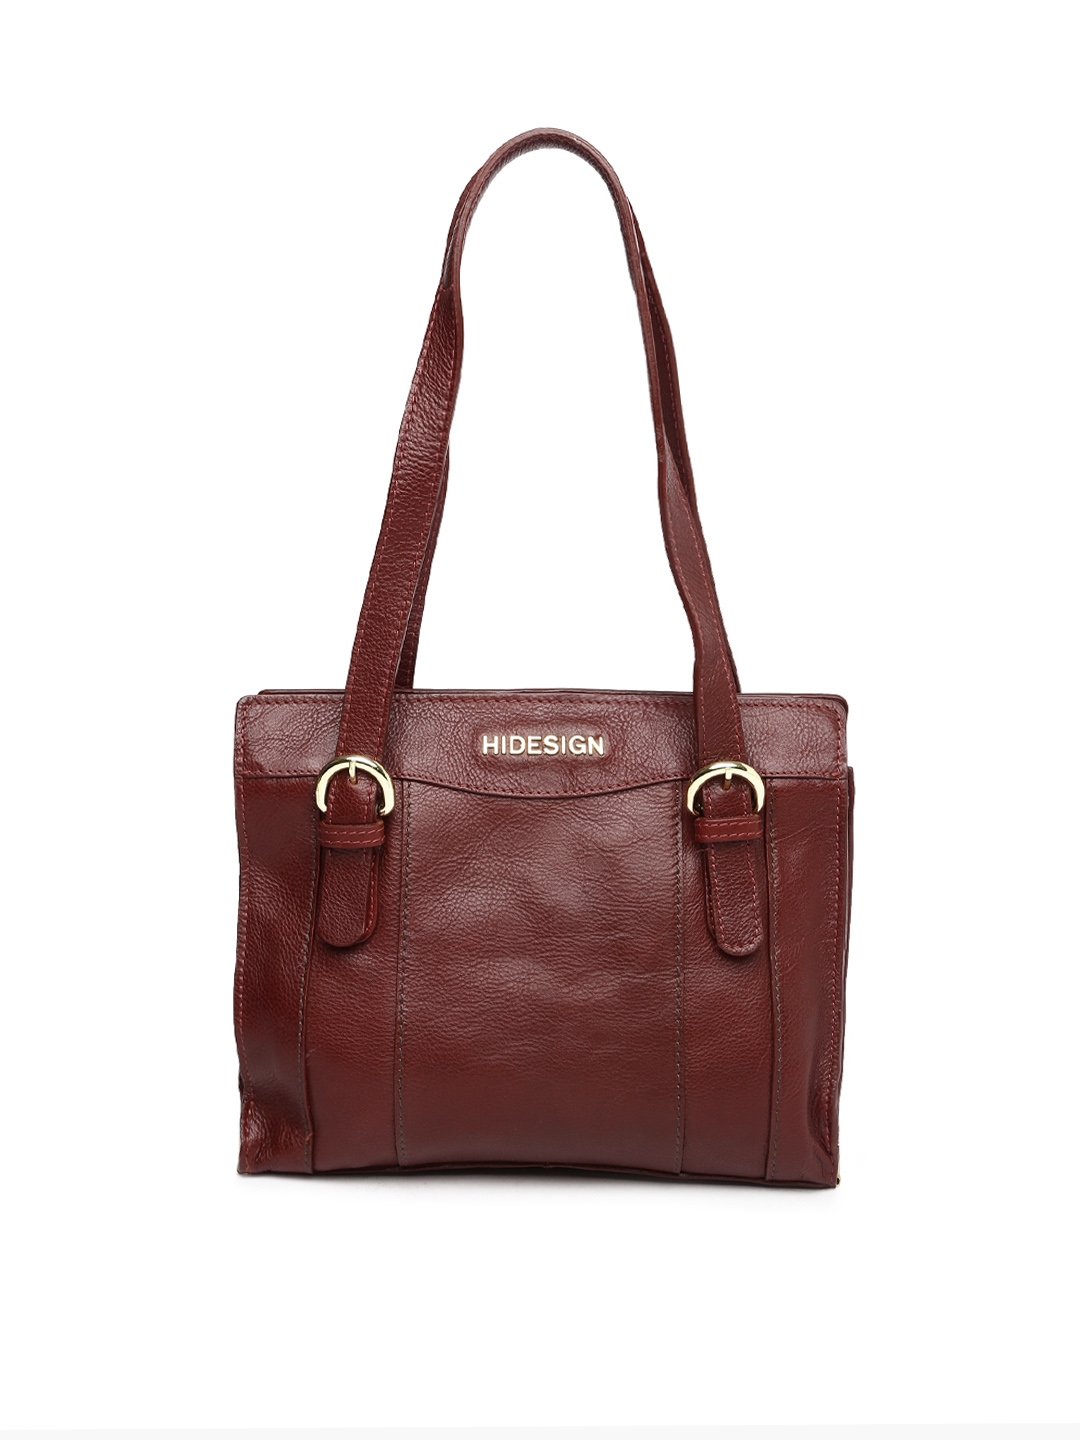 Buy Hidesign Burgundy Solid Leather Shoulder Bag - Handbags for Women 2060491 | Myntra